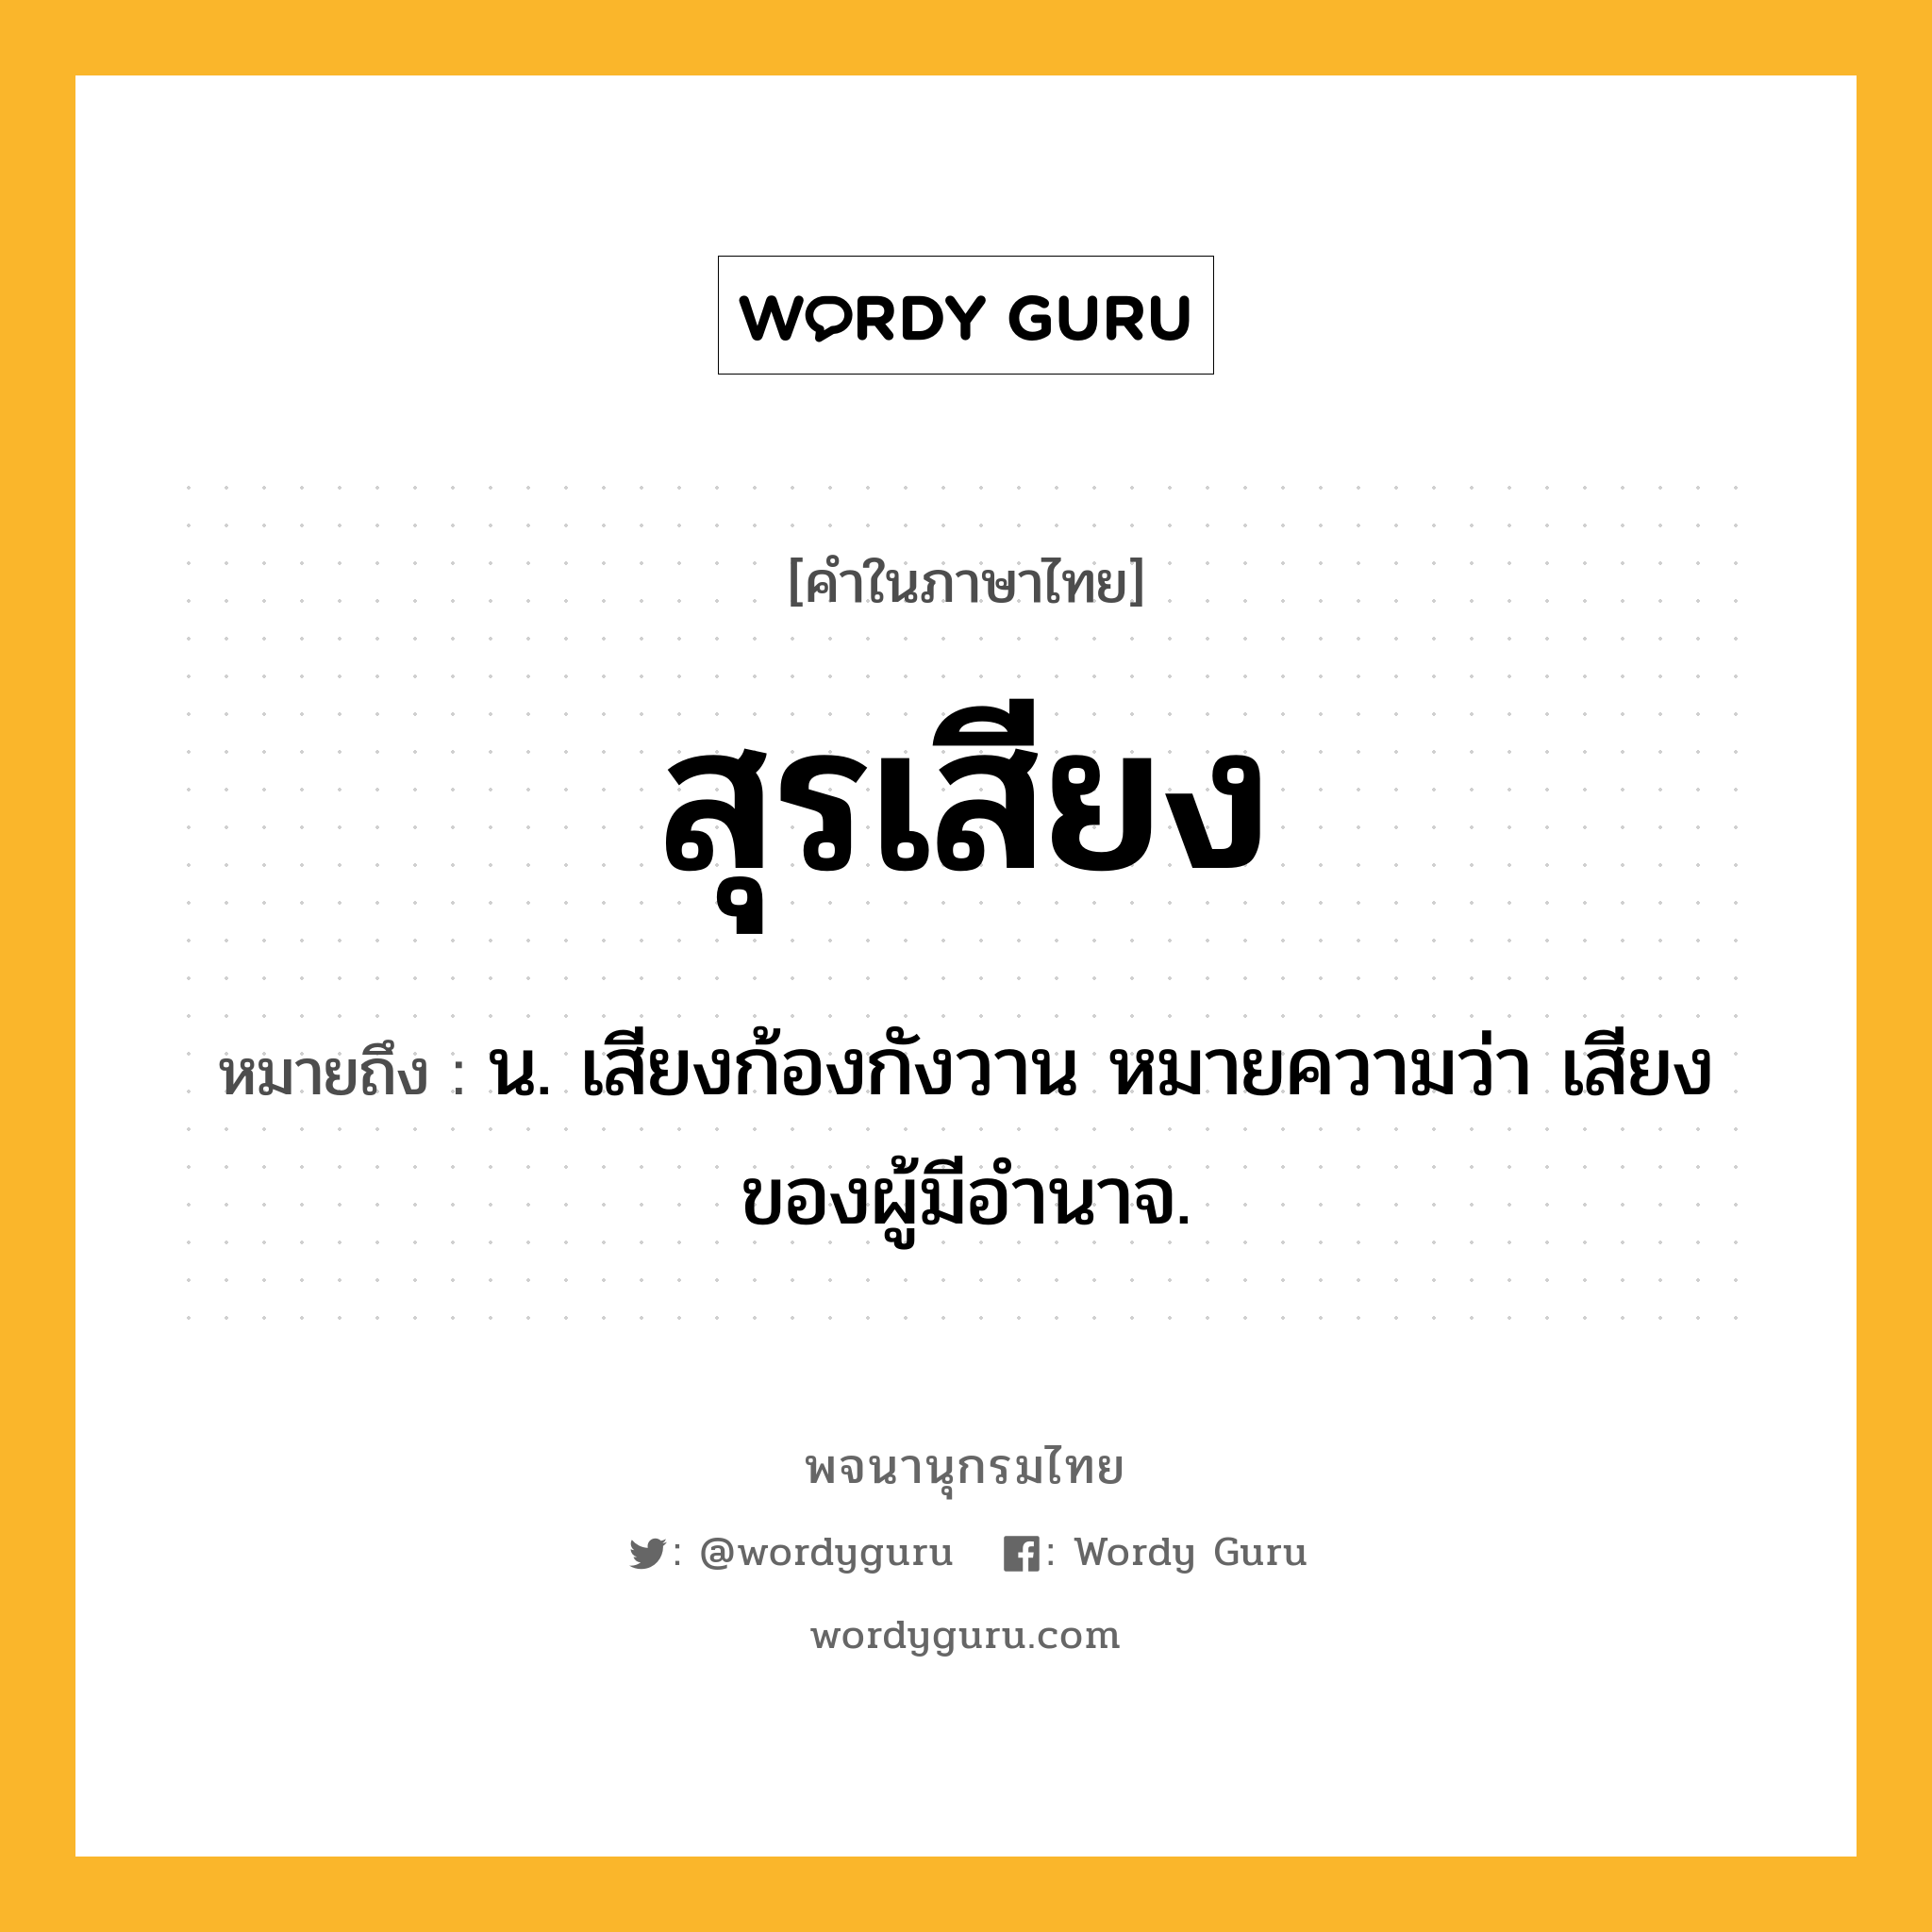 สุรเสียง หมายถึงอะไร?, คำในภาษาไทย สุรเสียง หมายถึง น. เสียงก้องกังวาน หมายความว่า เสียงของผู้มีอํานาจ.